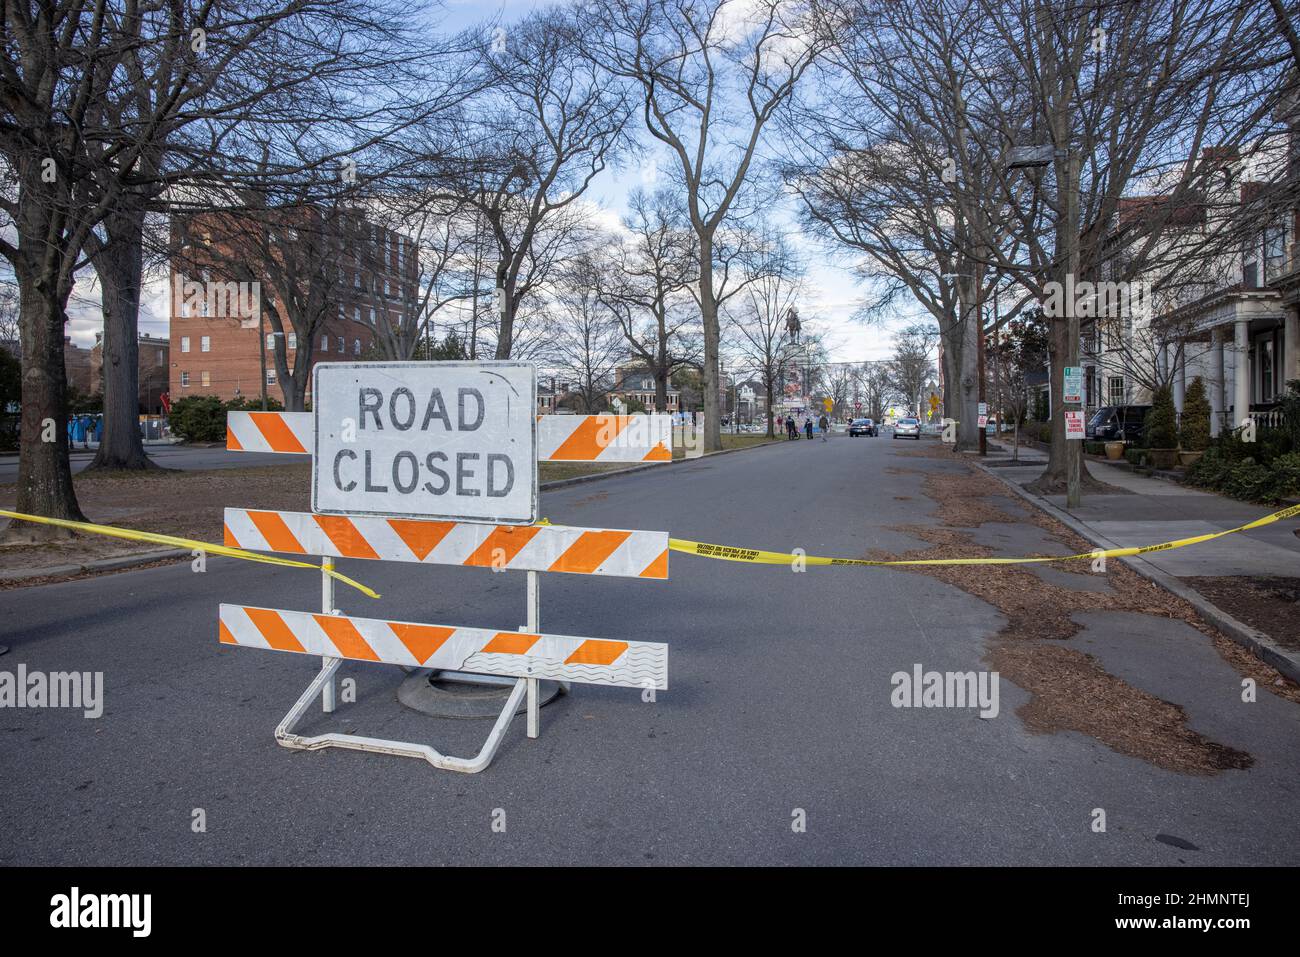 RICHMOND, VA – 17. Januar 2021: In der Nähe des Robert E. Lee Denkmals in Richmond ist eine Straße für den Autoverkehr gesperrt. Stockfoto